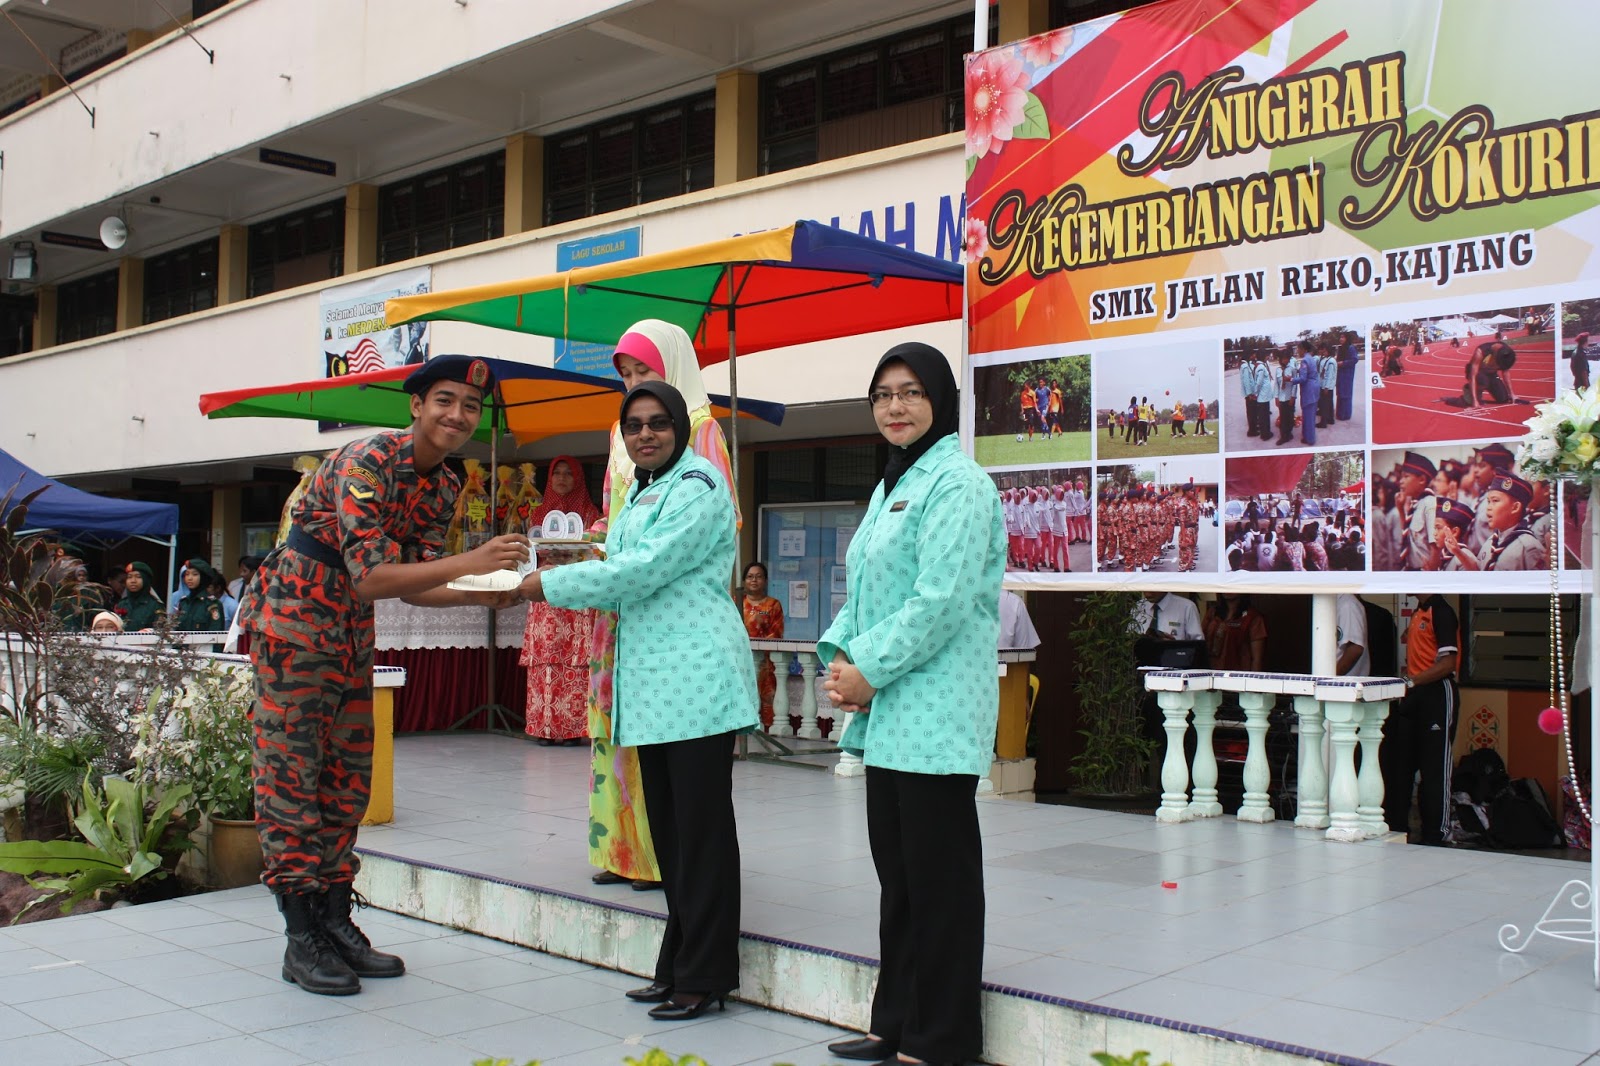 SMK Jalan Reko: Hari Anugerah Kokurikulum 2013